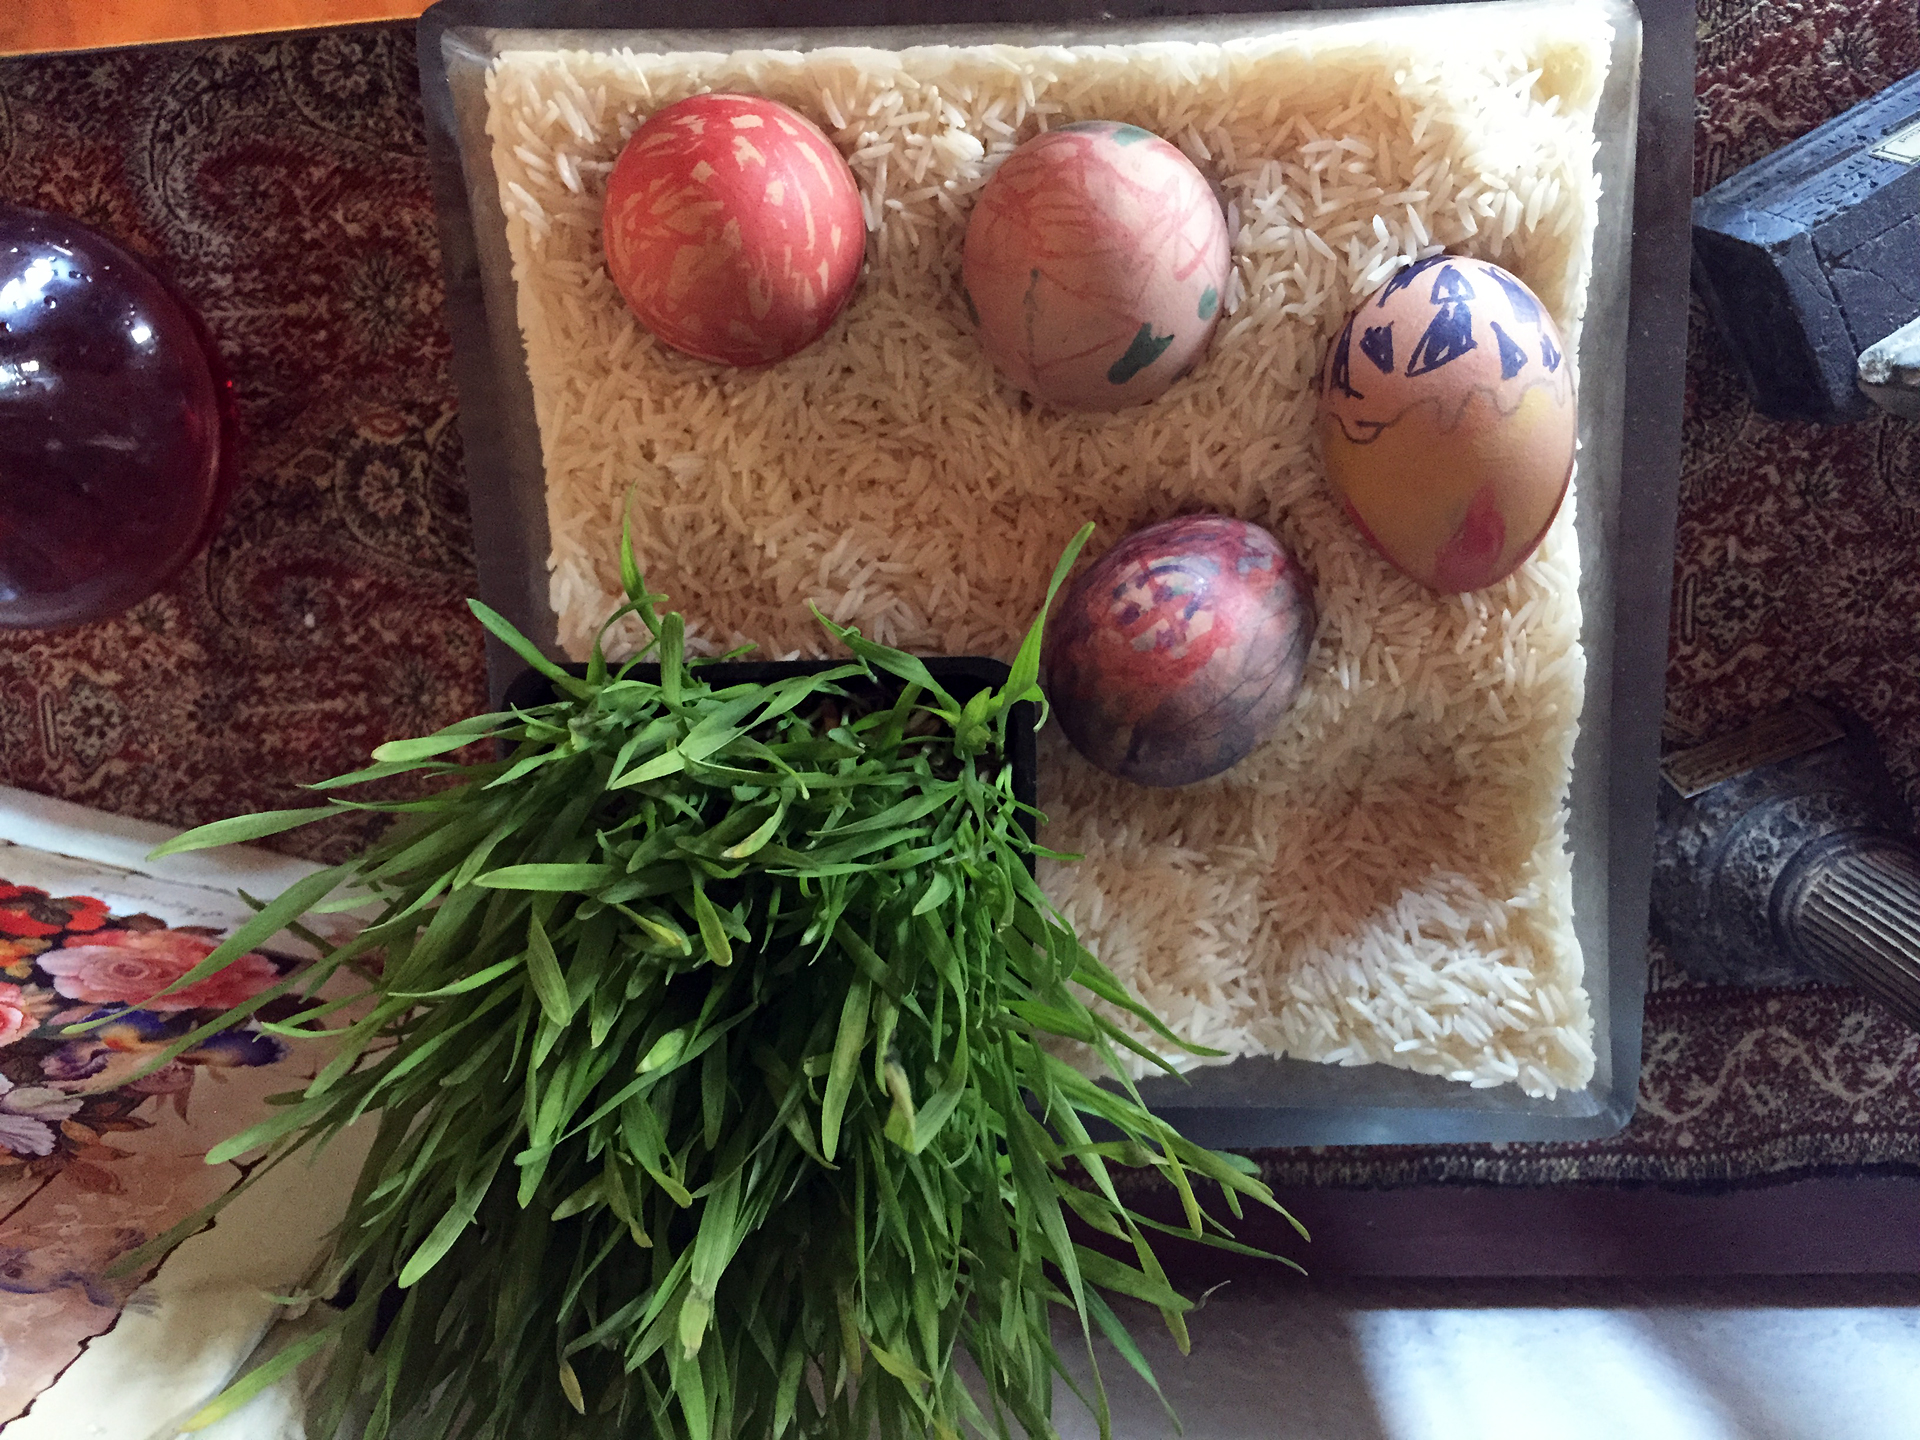 Eggs, which weren't a part of the original haftsin table, symbolize symbolize fertility.